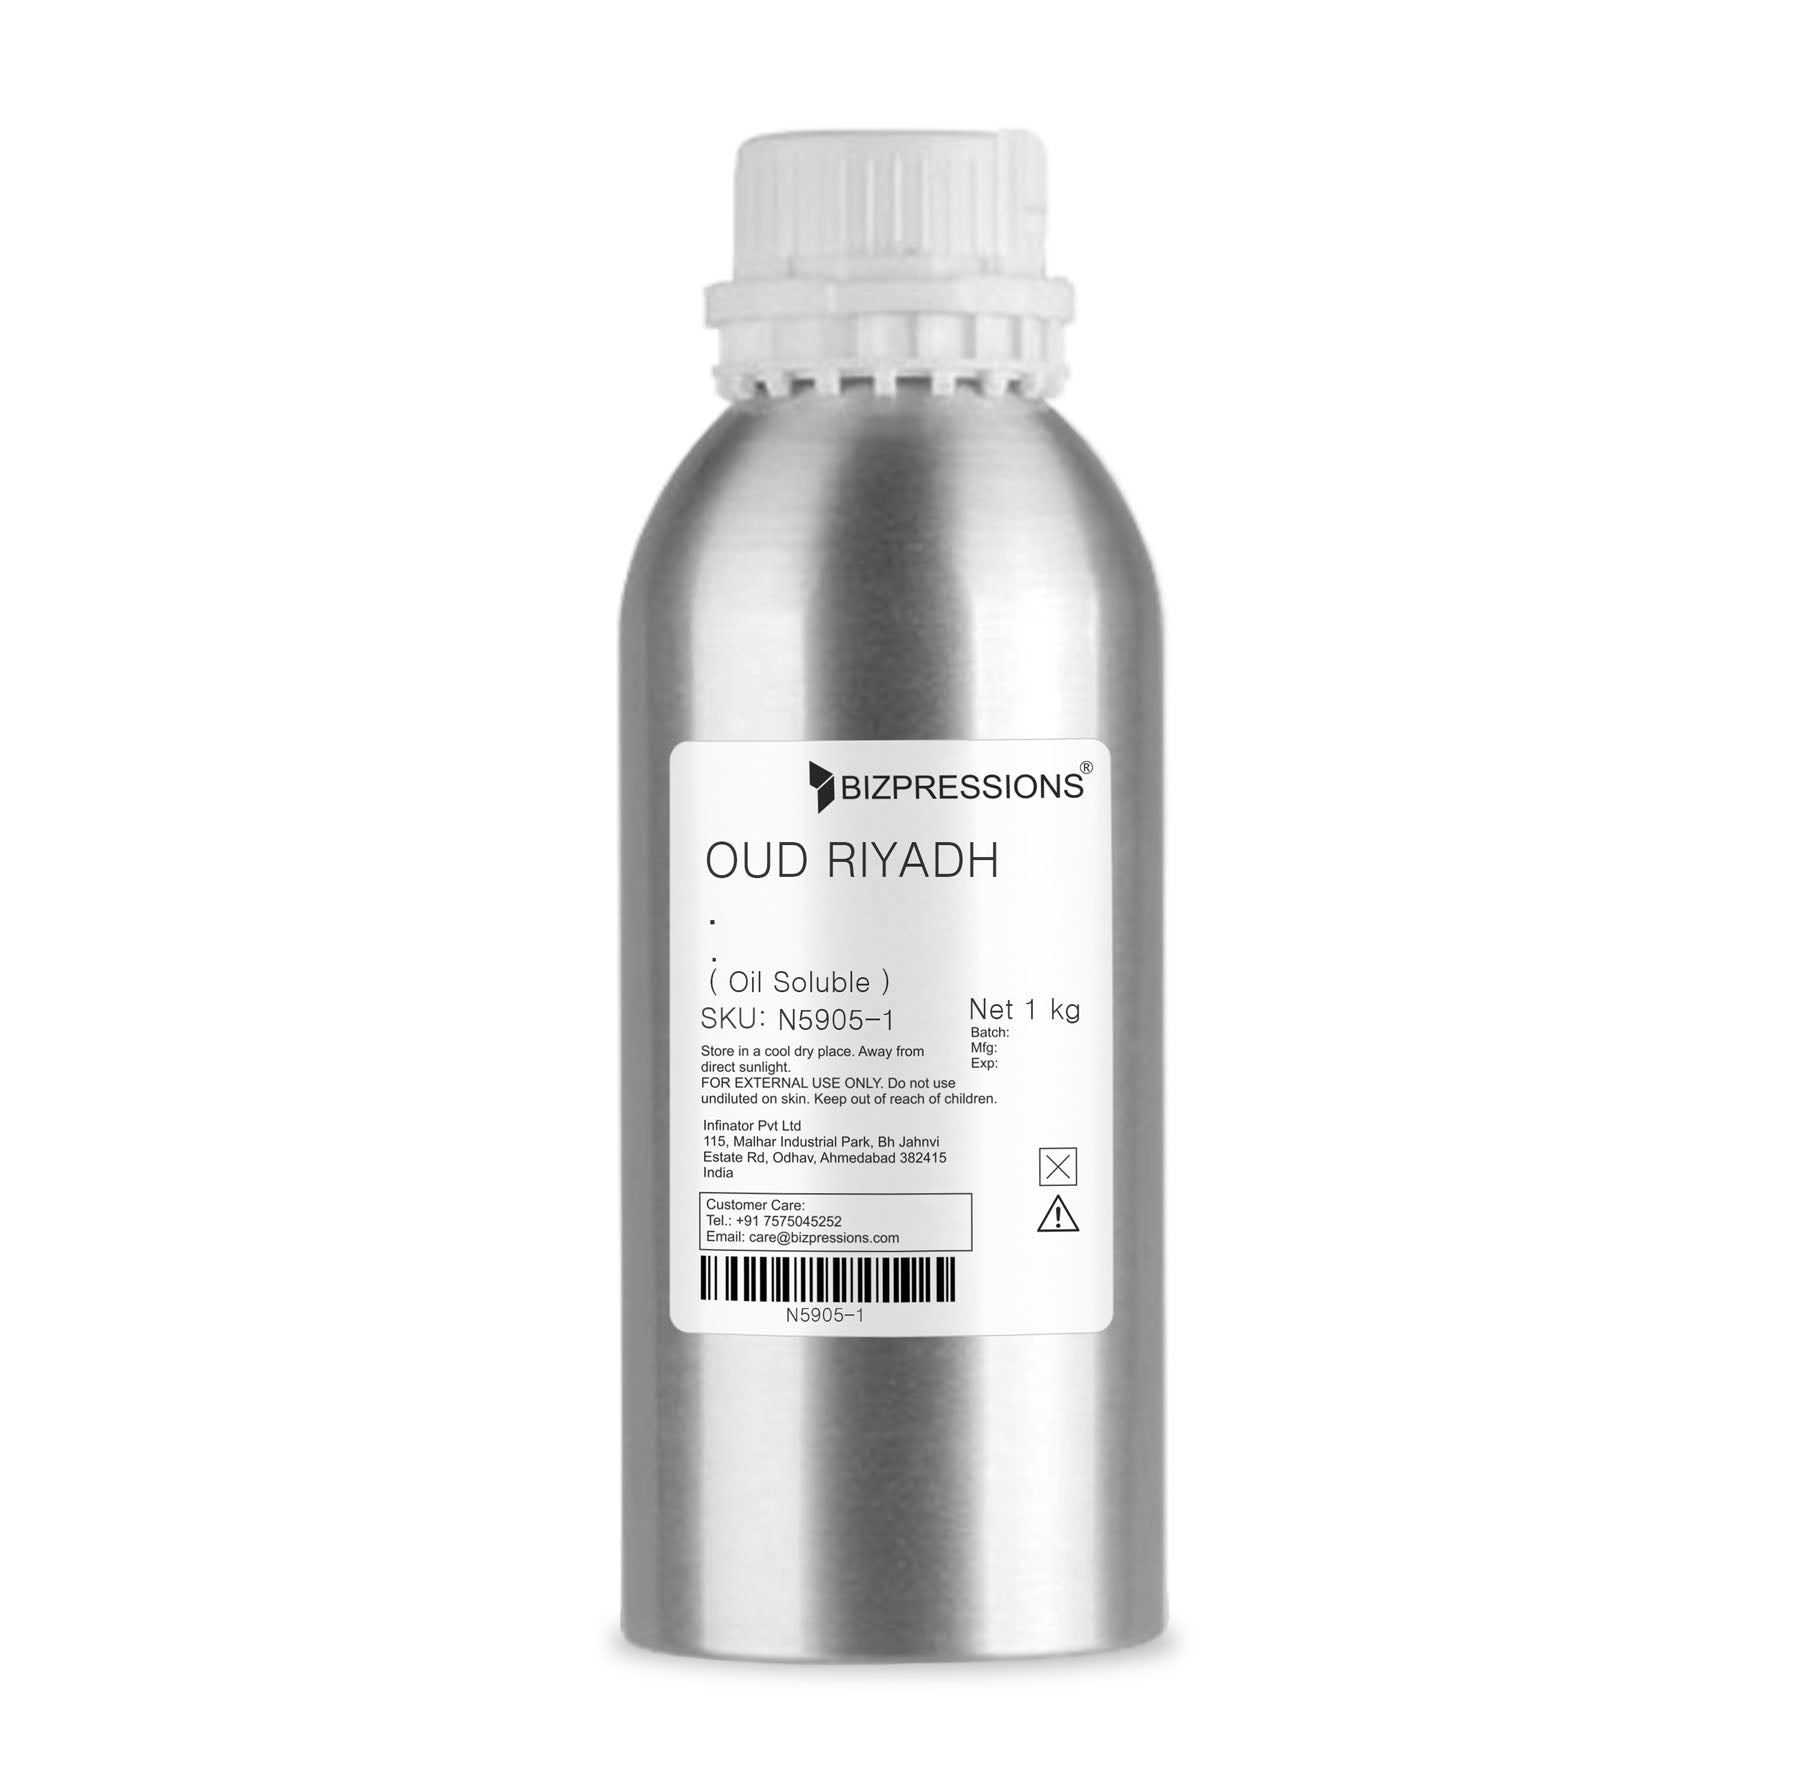 OUD RIYADH - Fragrance ( Oil Soluble ) - 1 kg